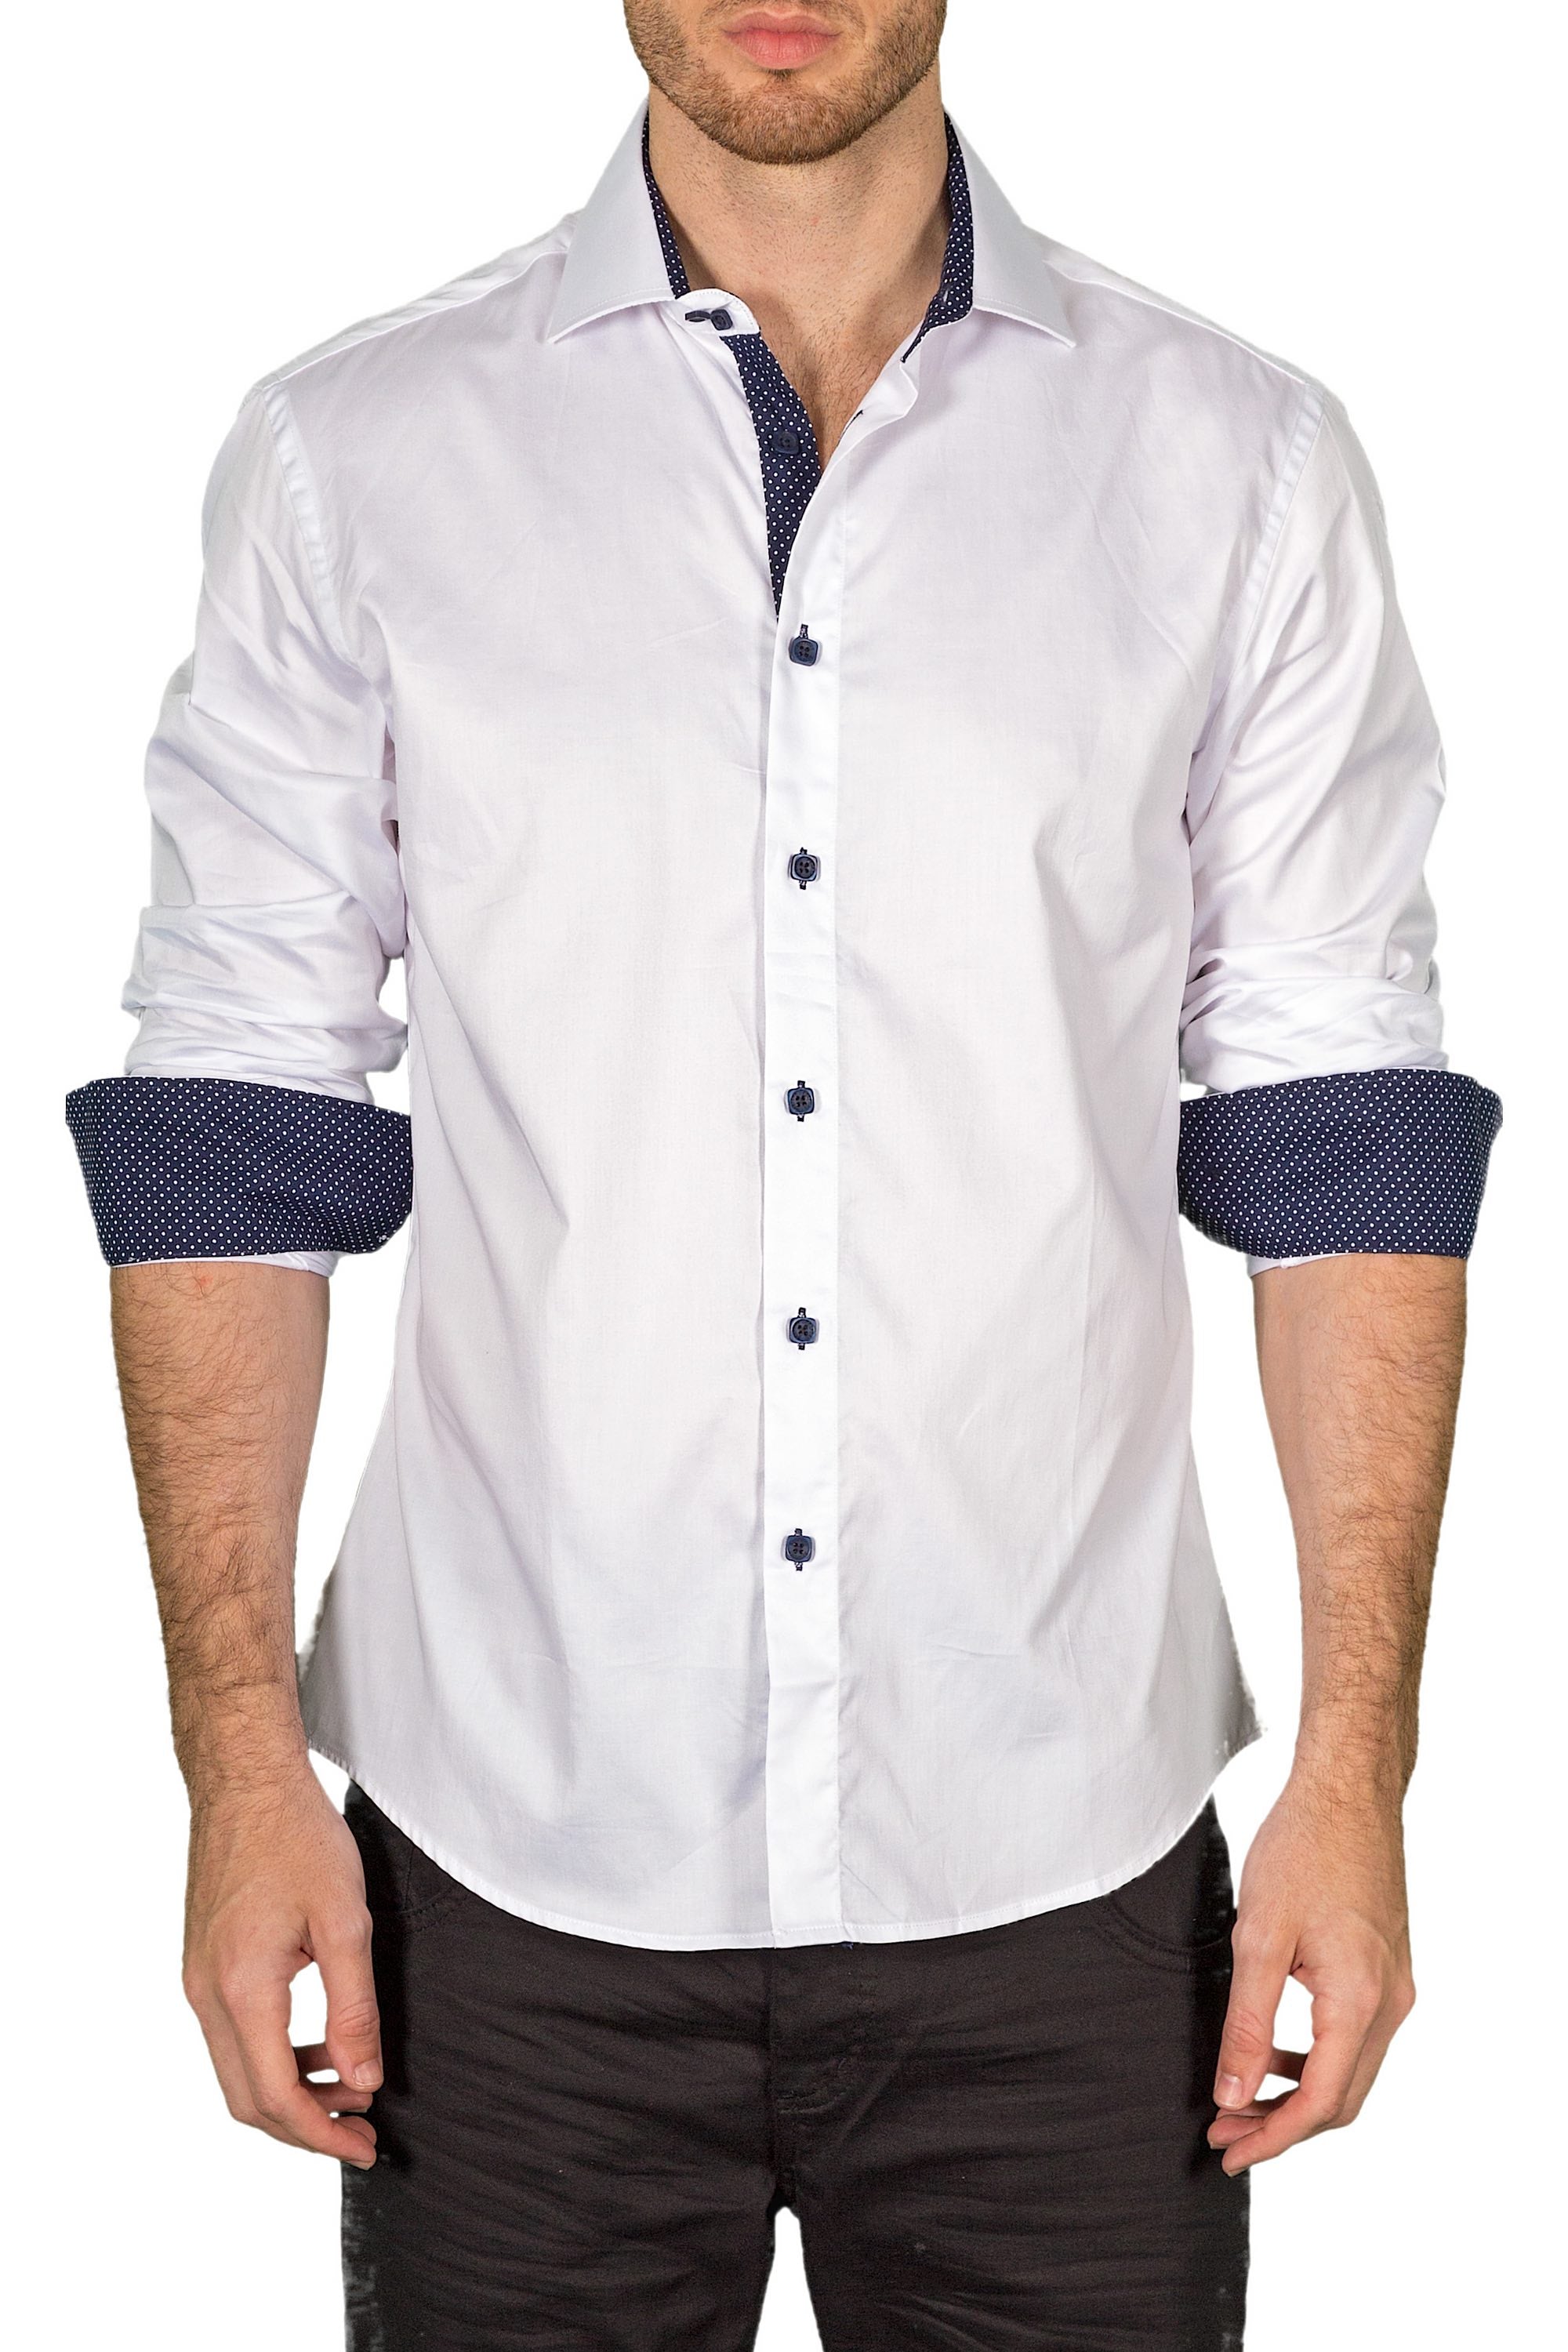 BESPOKE - Mens White Button Up Long Sleeve Dress Shirt - Modern Fit ...